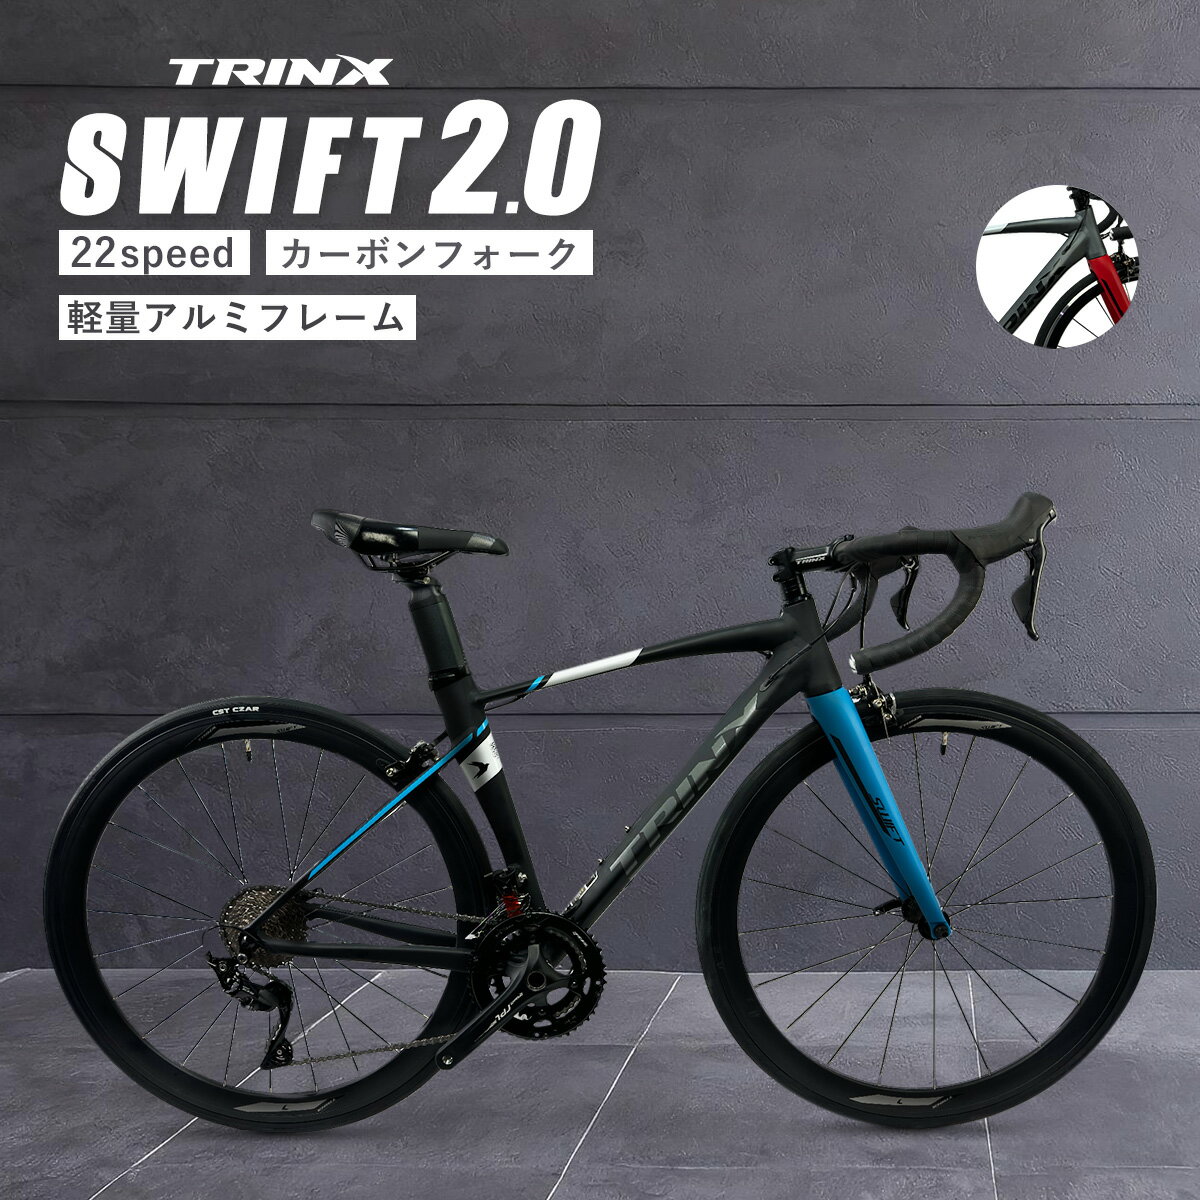 【スーパーSALE★ポイント5倍】本格派ロードバイク レース 入門からレース・競技用として TRINX SWIFT 自転車 カーボン シマノ 22段変速 700c サイクリング